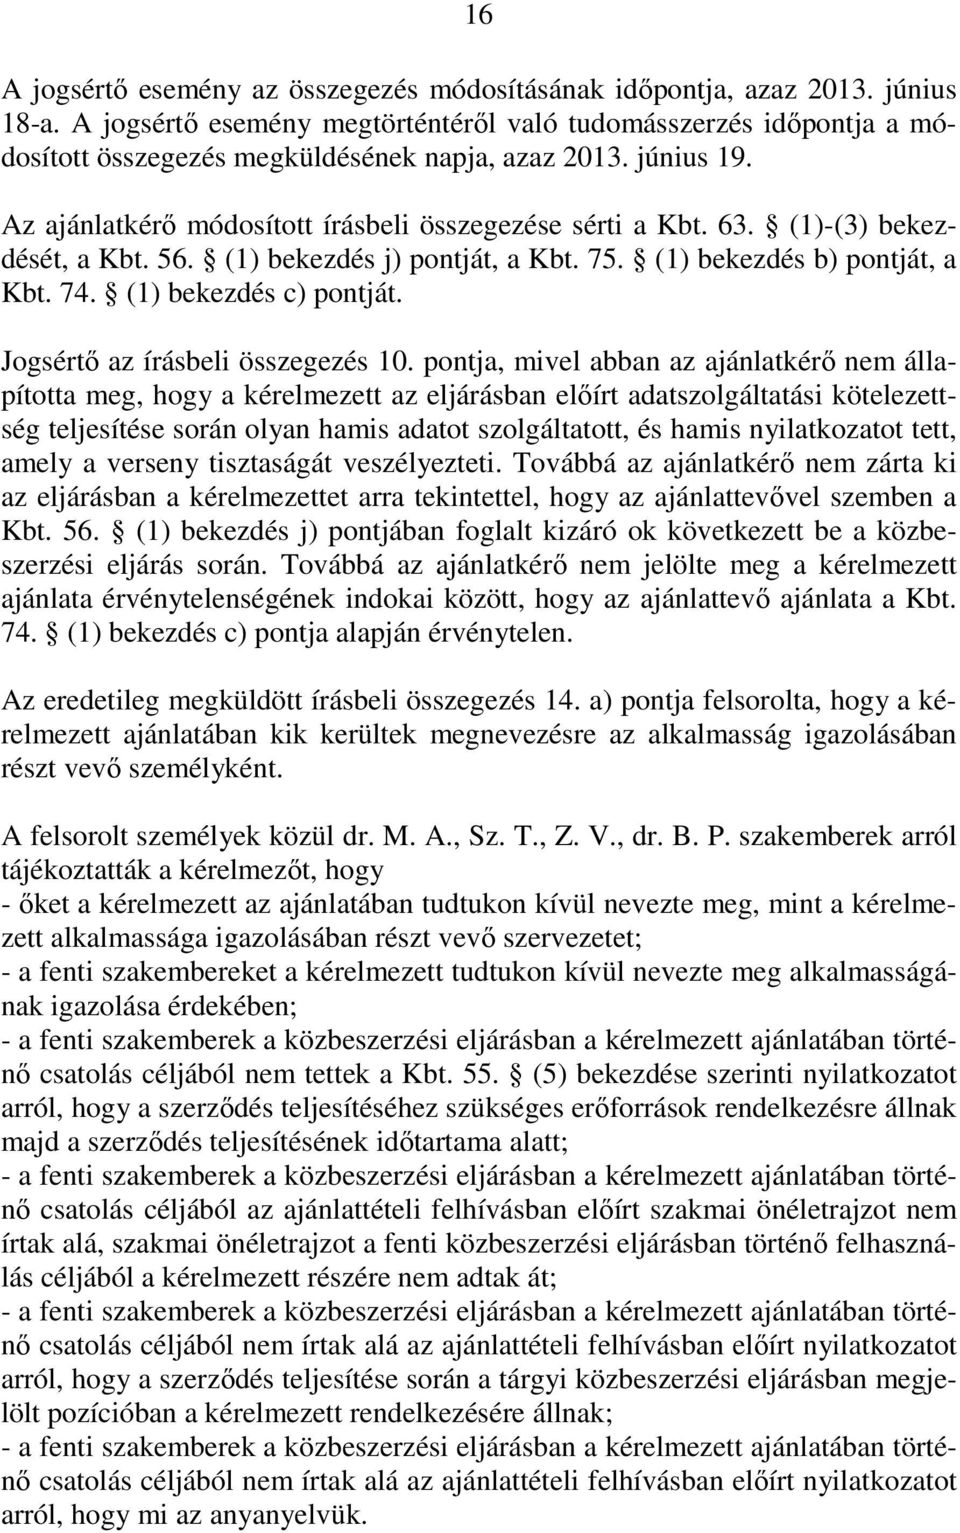 (1)-(3) bekezdését, a Kbt. 56. (1) bekezdés j) pontját, a Kbt. 75. (1) bekezdés b) pontját, a Kbt. 74. (1) bekezdés c) pontját. Jogsértı az írásbeli összegezés 10.